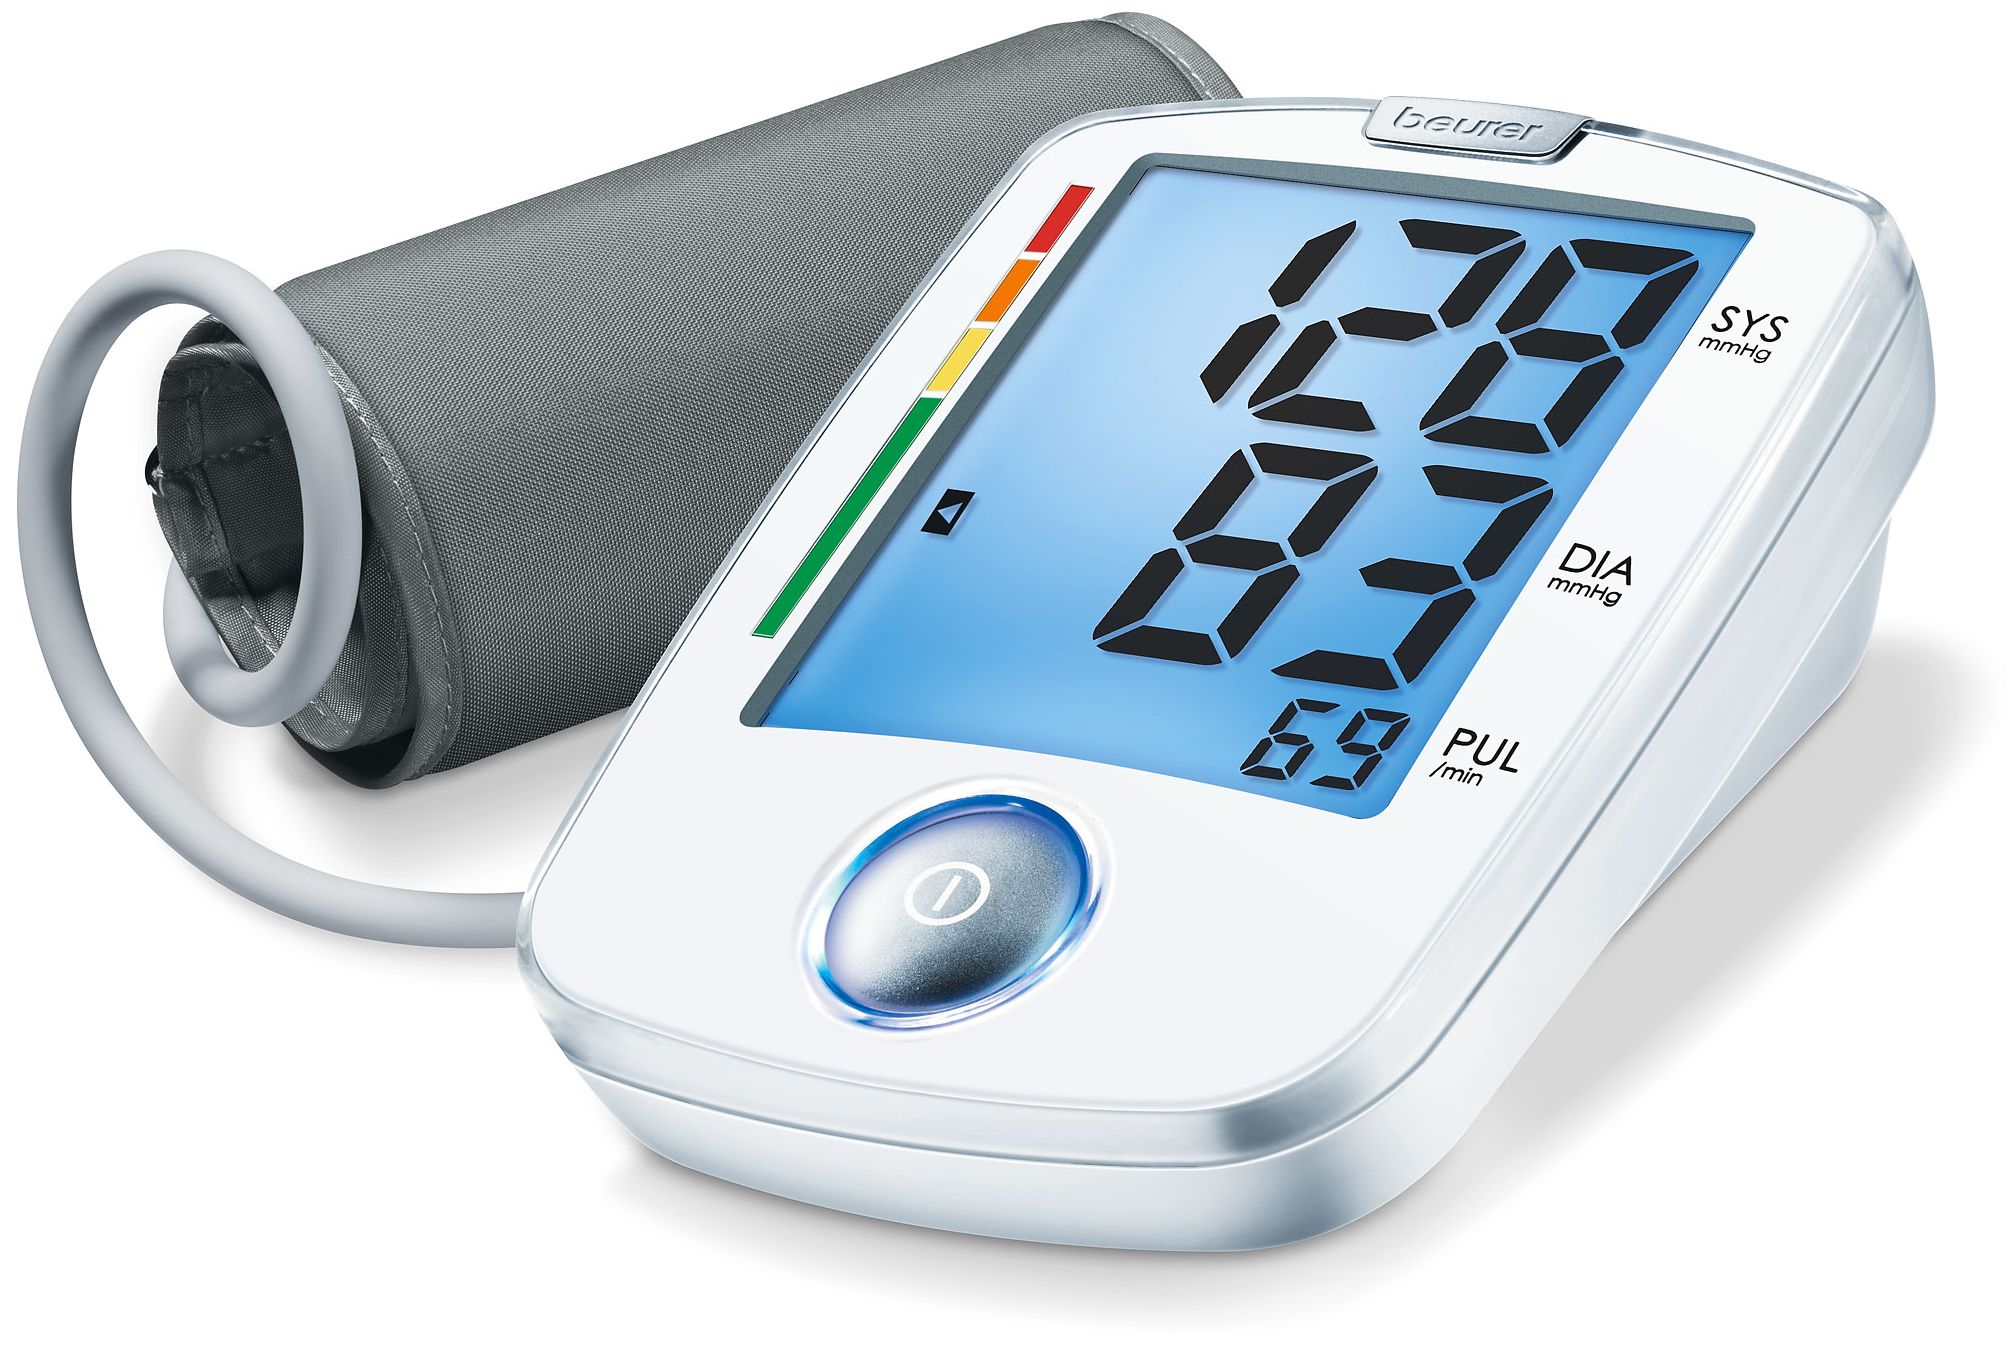 Beurer BM44 Blutdruckmessgerät XL-Display Ein-Knopf-Bedienung 22